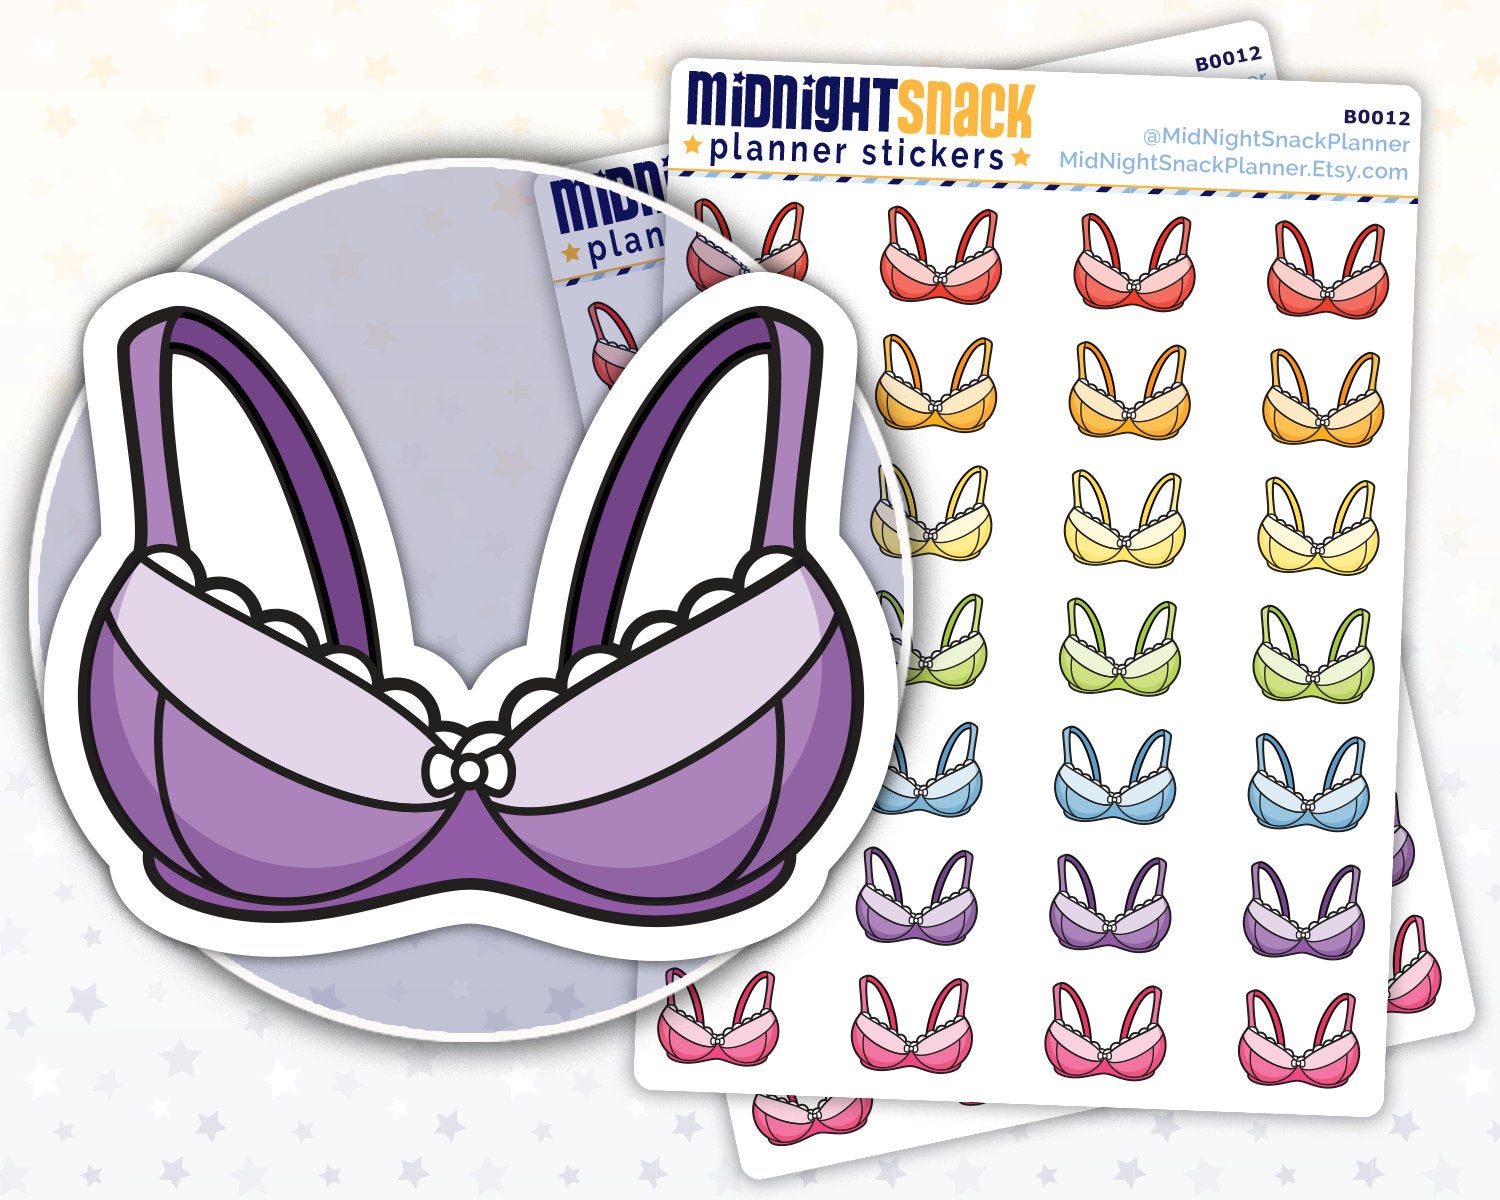 Bra Icon: Breast Exam Reminder Planner Stickers Midnight Snack Planner